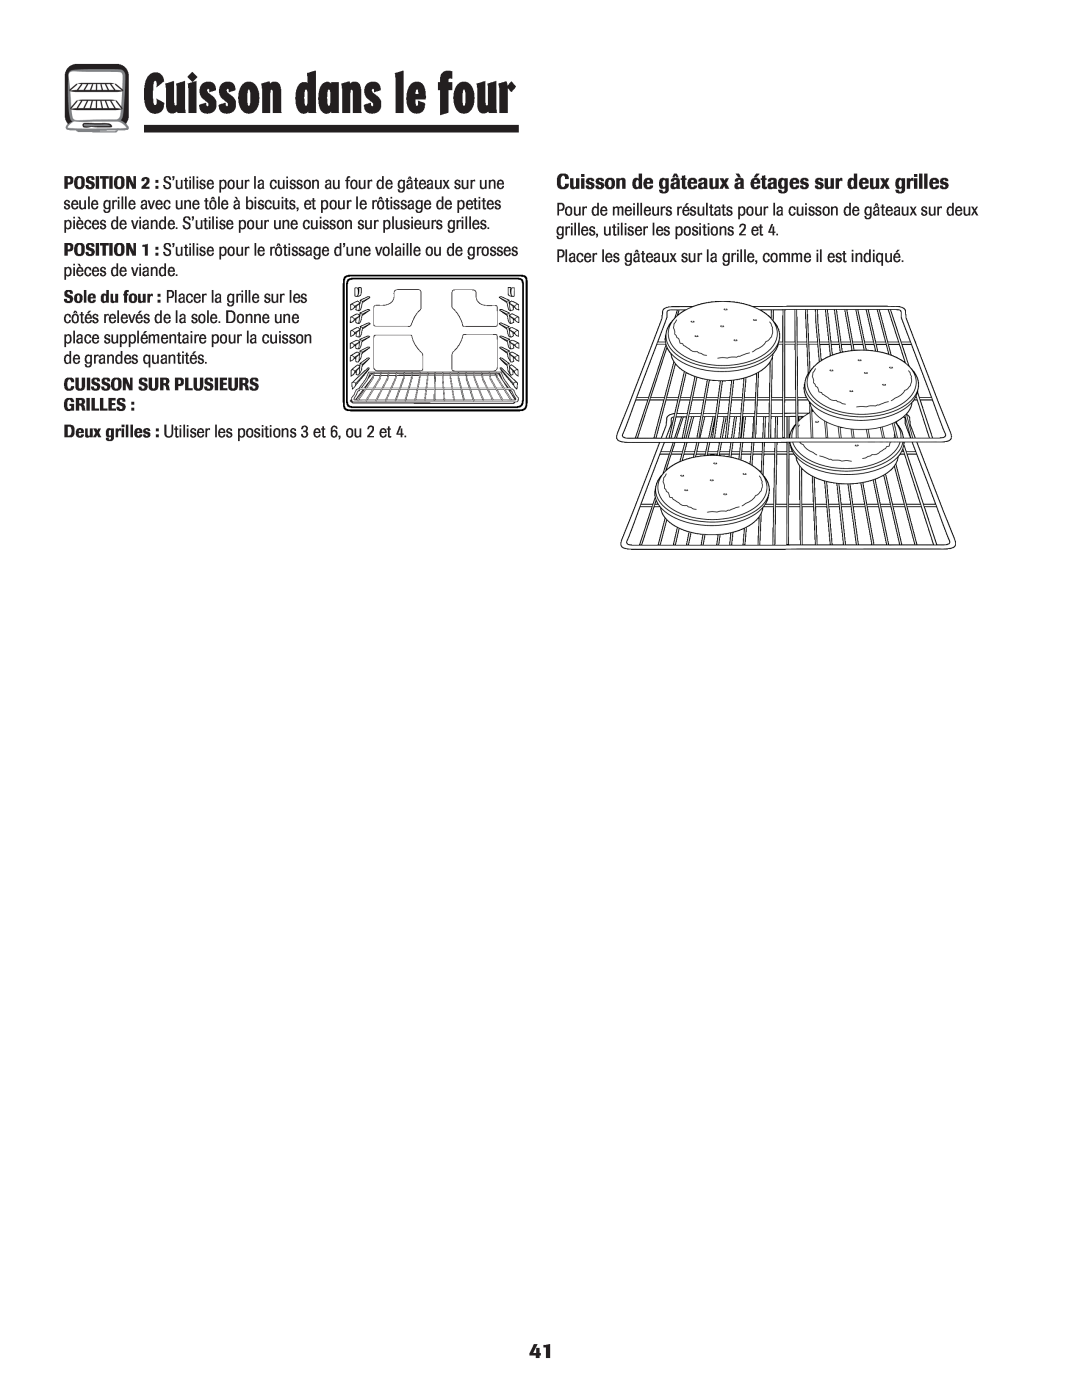 Maytag Gas - Precision Touch Control 500 Range Cuisson de gâteaux à étages sur deux grilles, Cuisson dans le four 